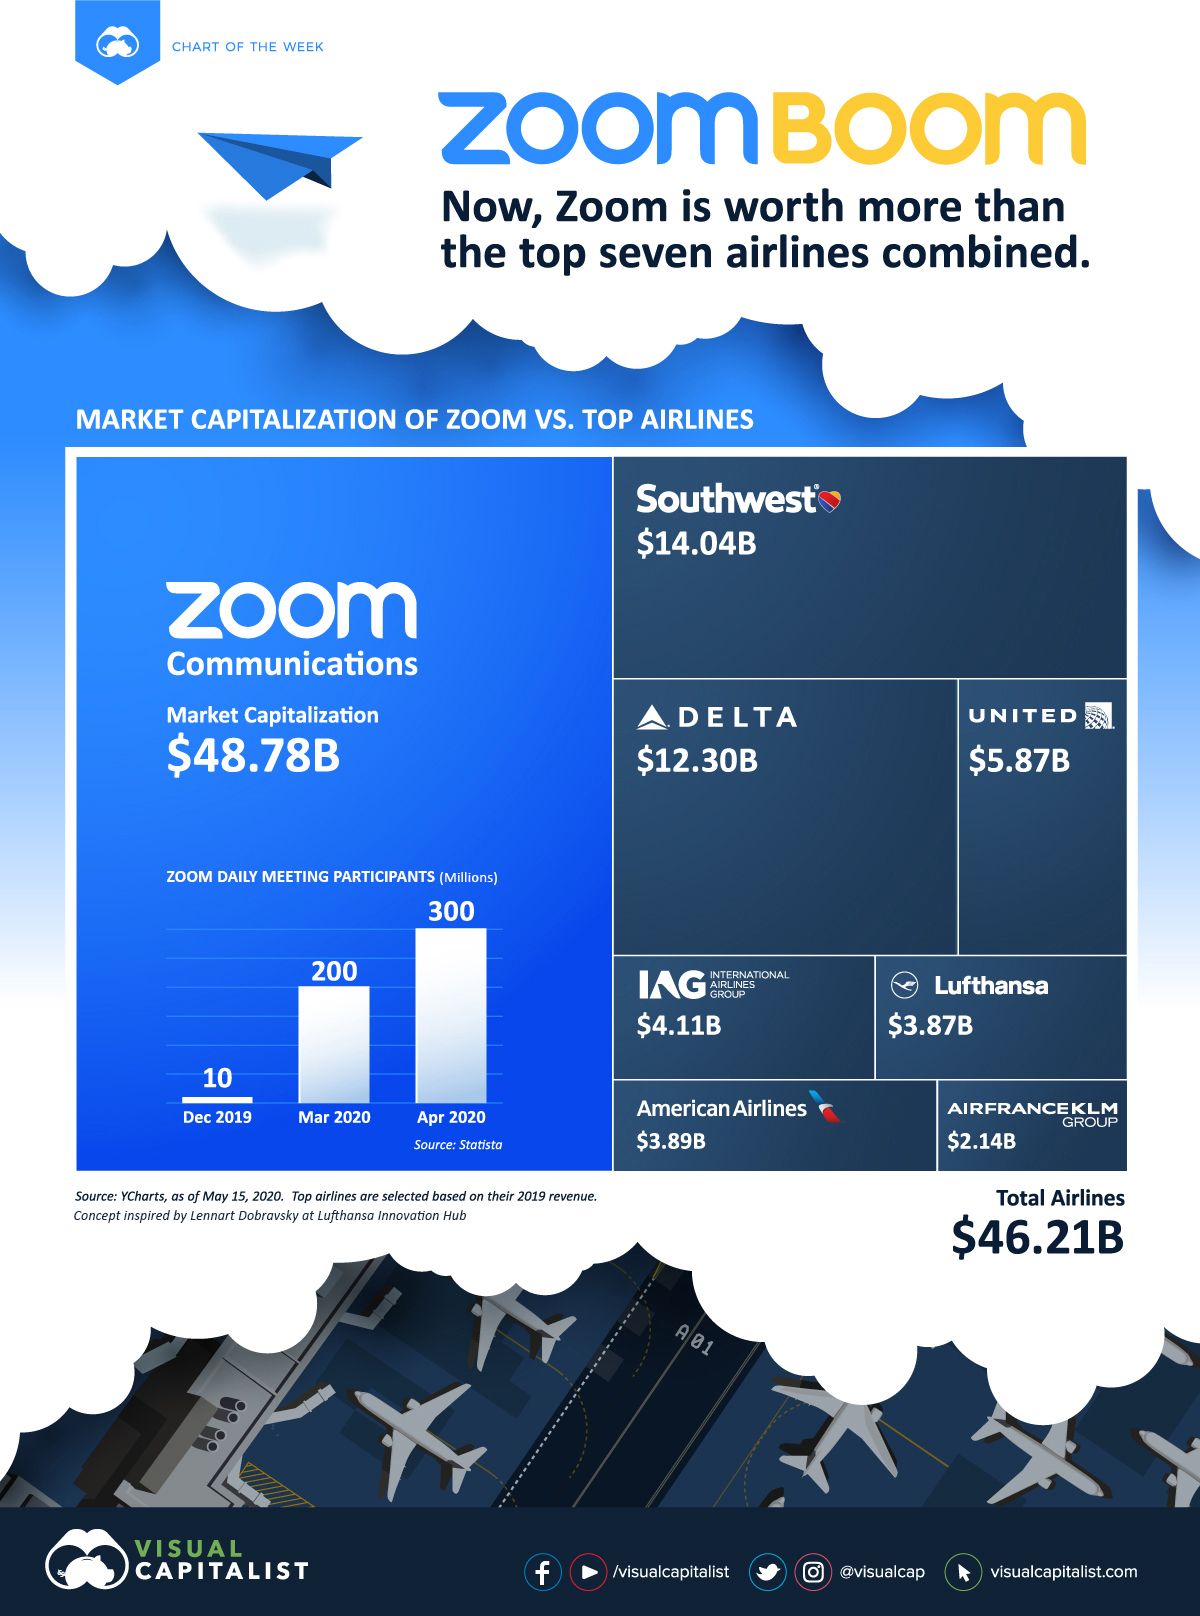 Zoom-ի շուկայական կապիտալիզացիան այժմ ավել է քան աշխարհի 7 ամենախոշոր ավիաընկերությանը միասին